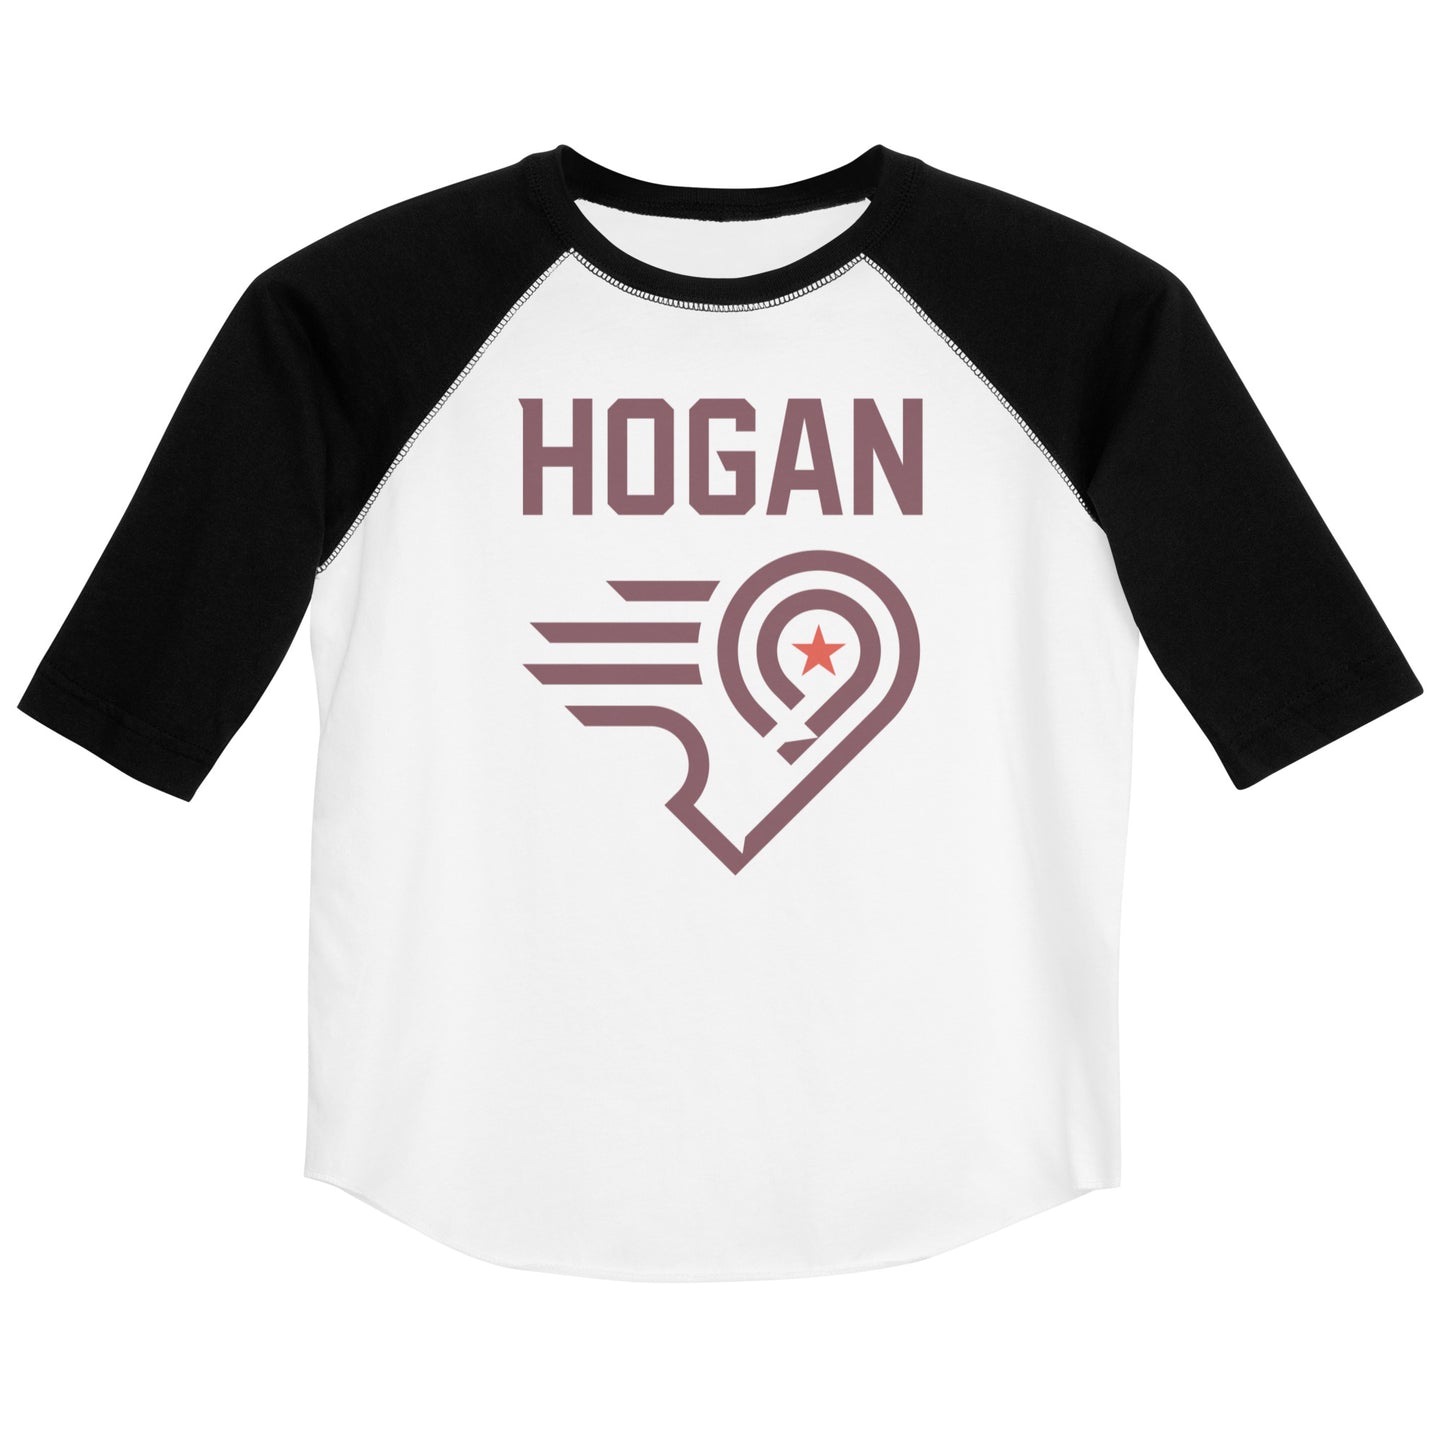 Hogan Youth Baseball Shirt